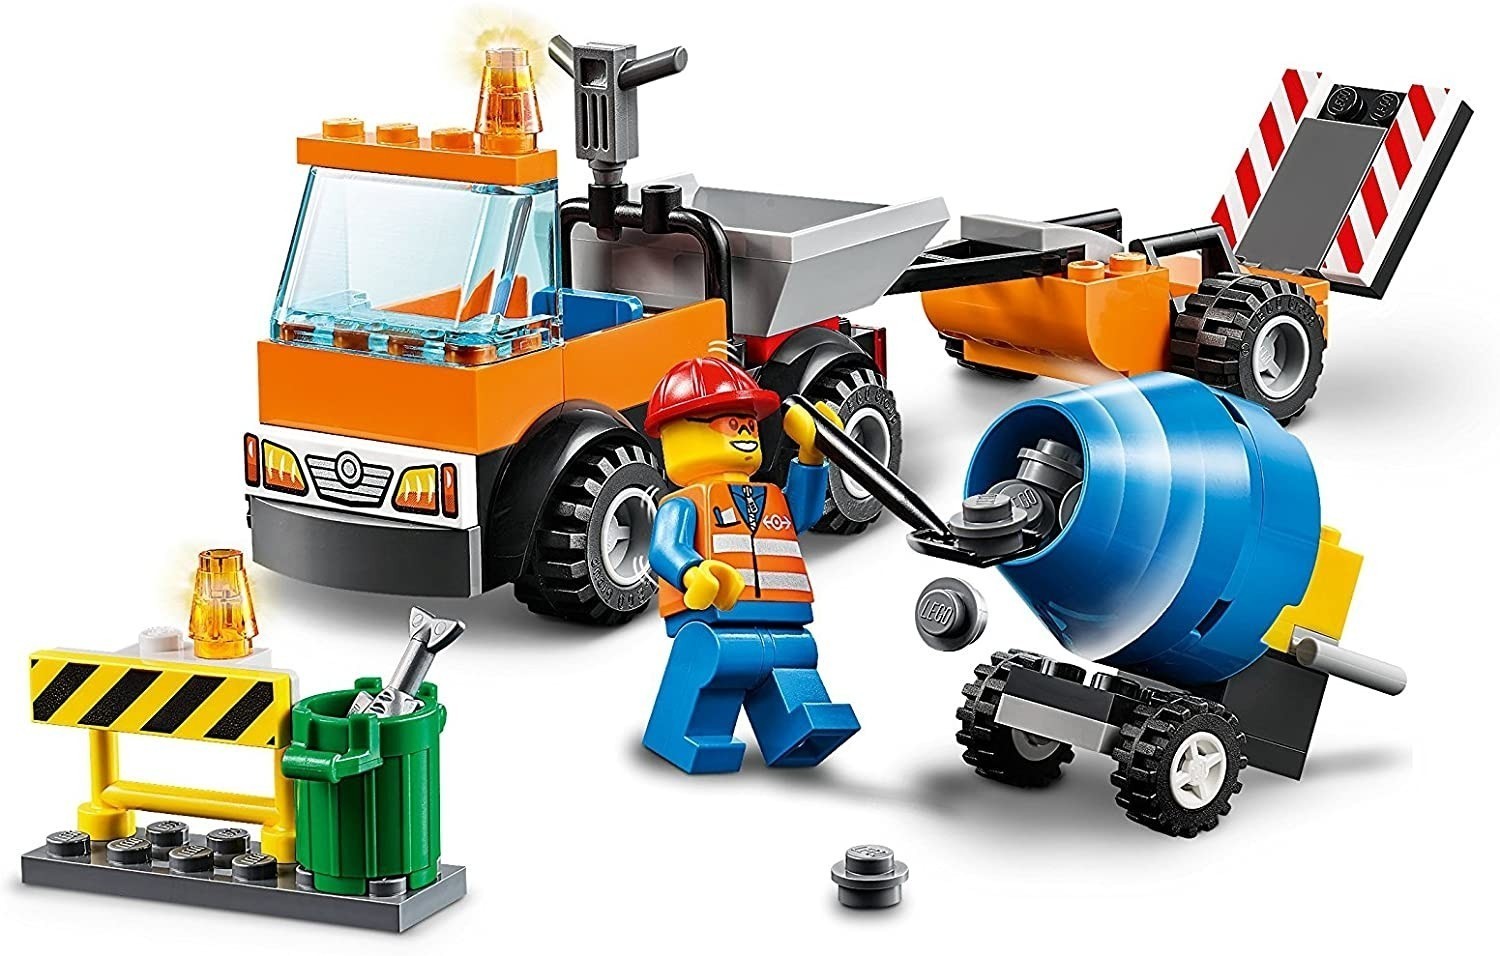 Lego Juniors 10750 Camión de Obra en Carretera